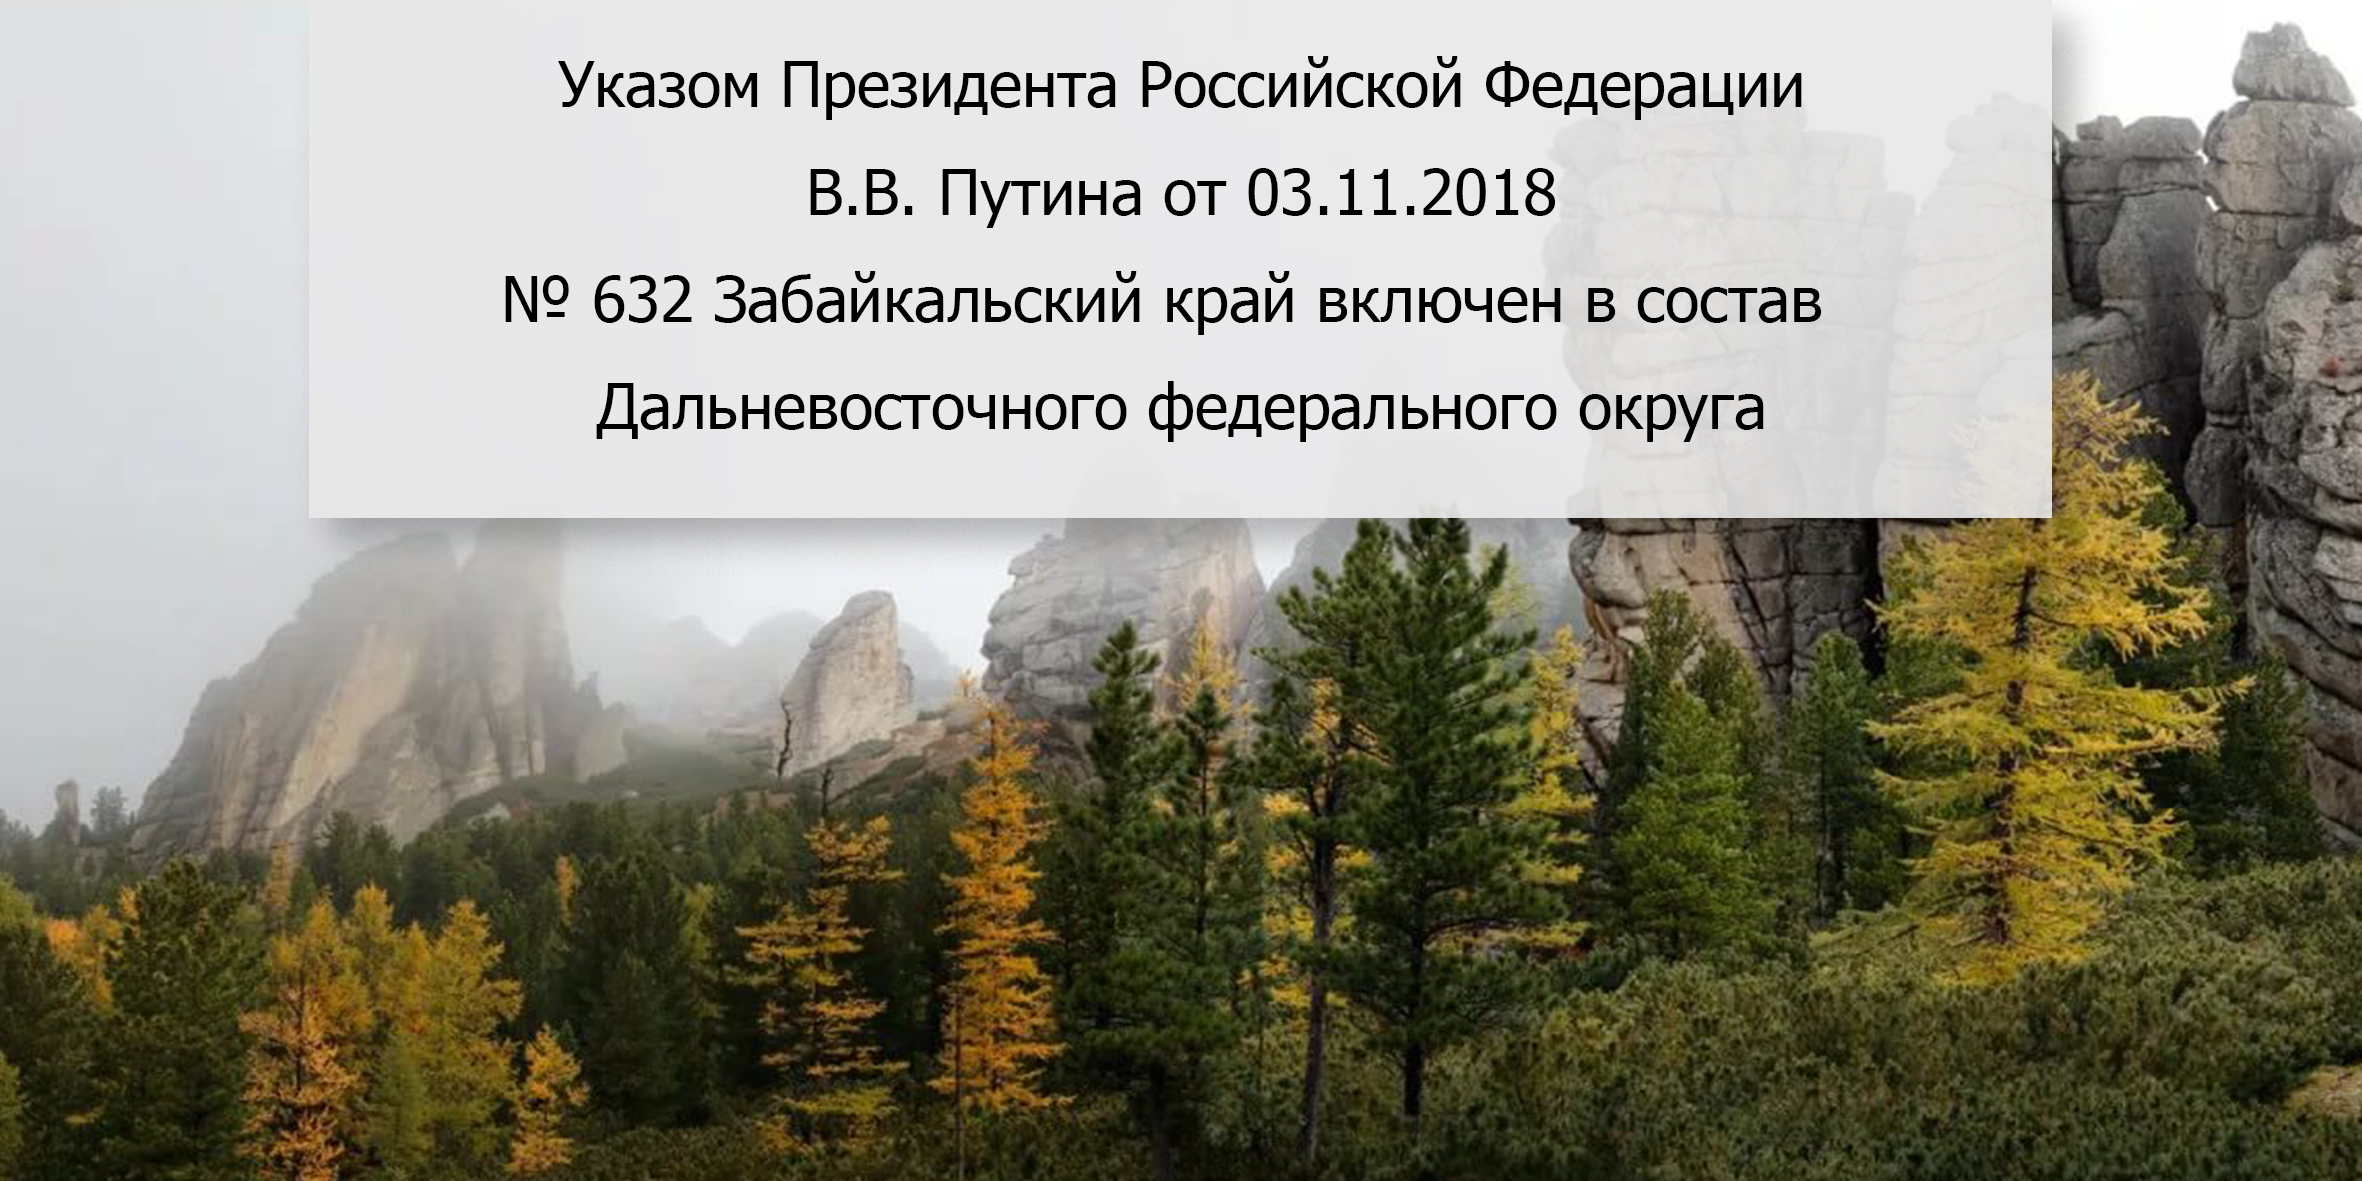 Указом Президента Российской Федерации В.В. Путина от 03.11.2018  № 632 Забайкальский край включен в состав  Дальневосточного федерального округа